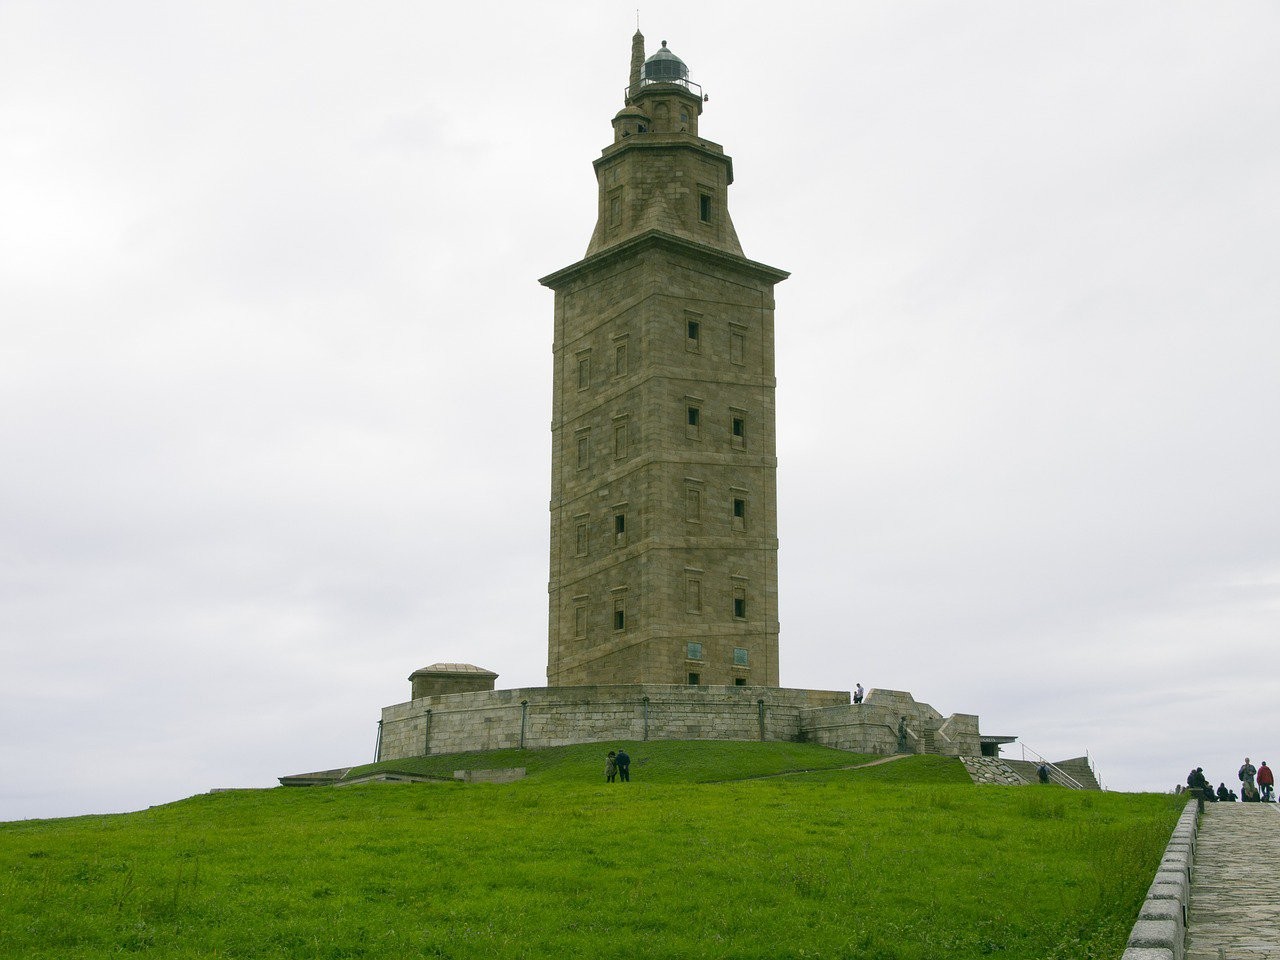 Римская башня Геркулеса – старейший в мире маяк. Находится у входа в гавань Ла-Корунья в Галисии, Испания. Возведён предположительно во второй половине 1-го века. Фото needpix.com